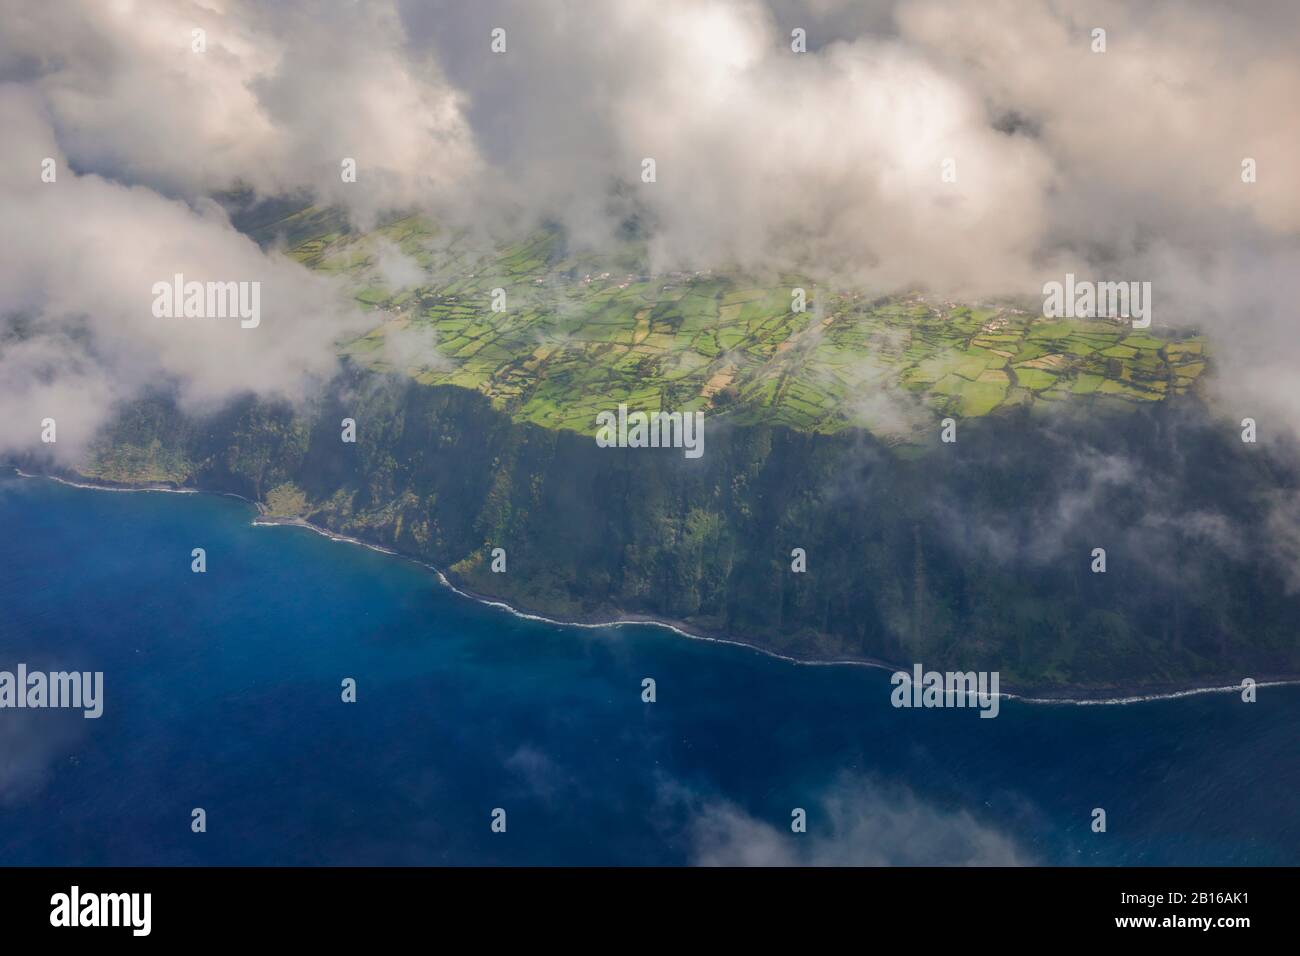 Veduta aerea delle scogliere dell'isola di Terceira, Terceira, Azzorre, Portogallo, Penisola iberica, Europa occidentale Foto Stock